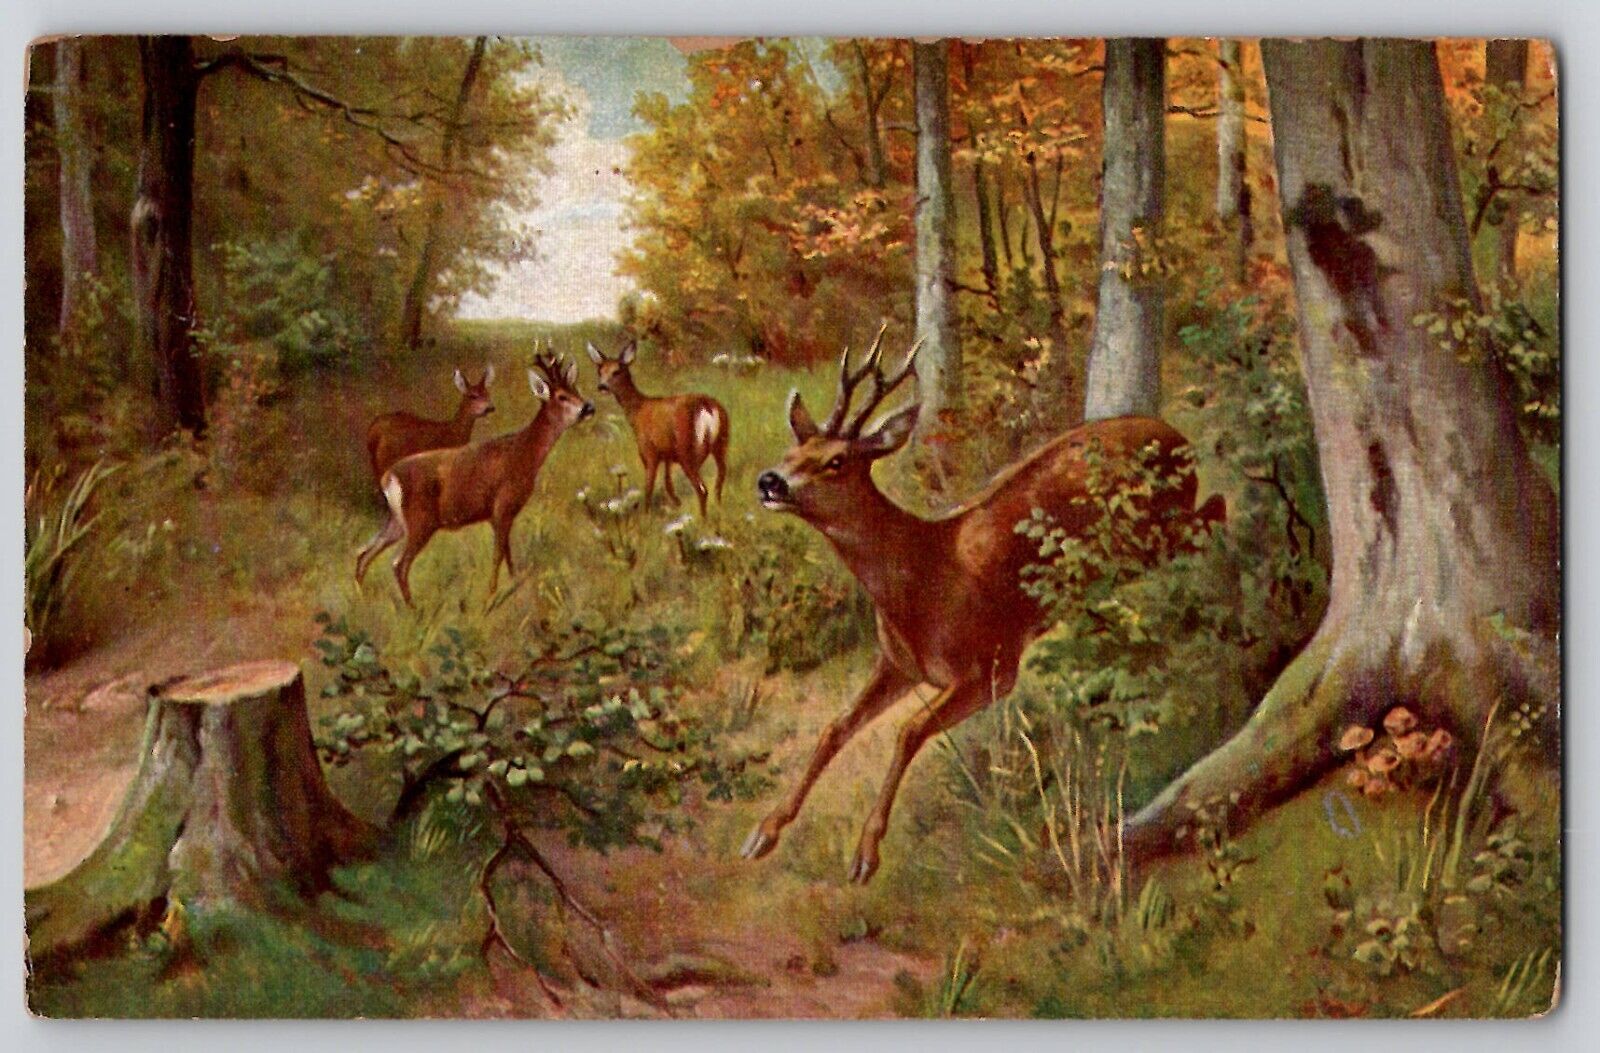 Roe Deer Herd Bucks Wildlife Forest Art Antique Postcard 1910s No. 6019